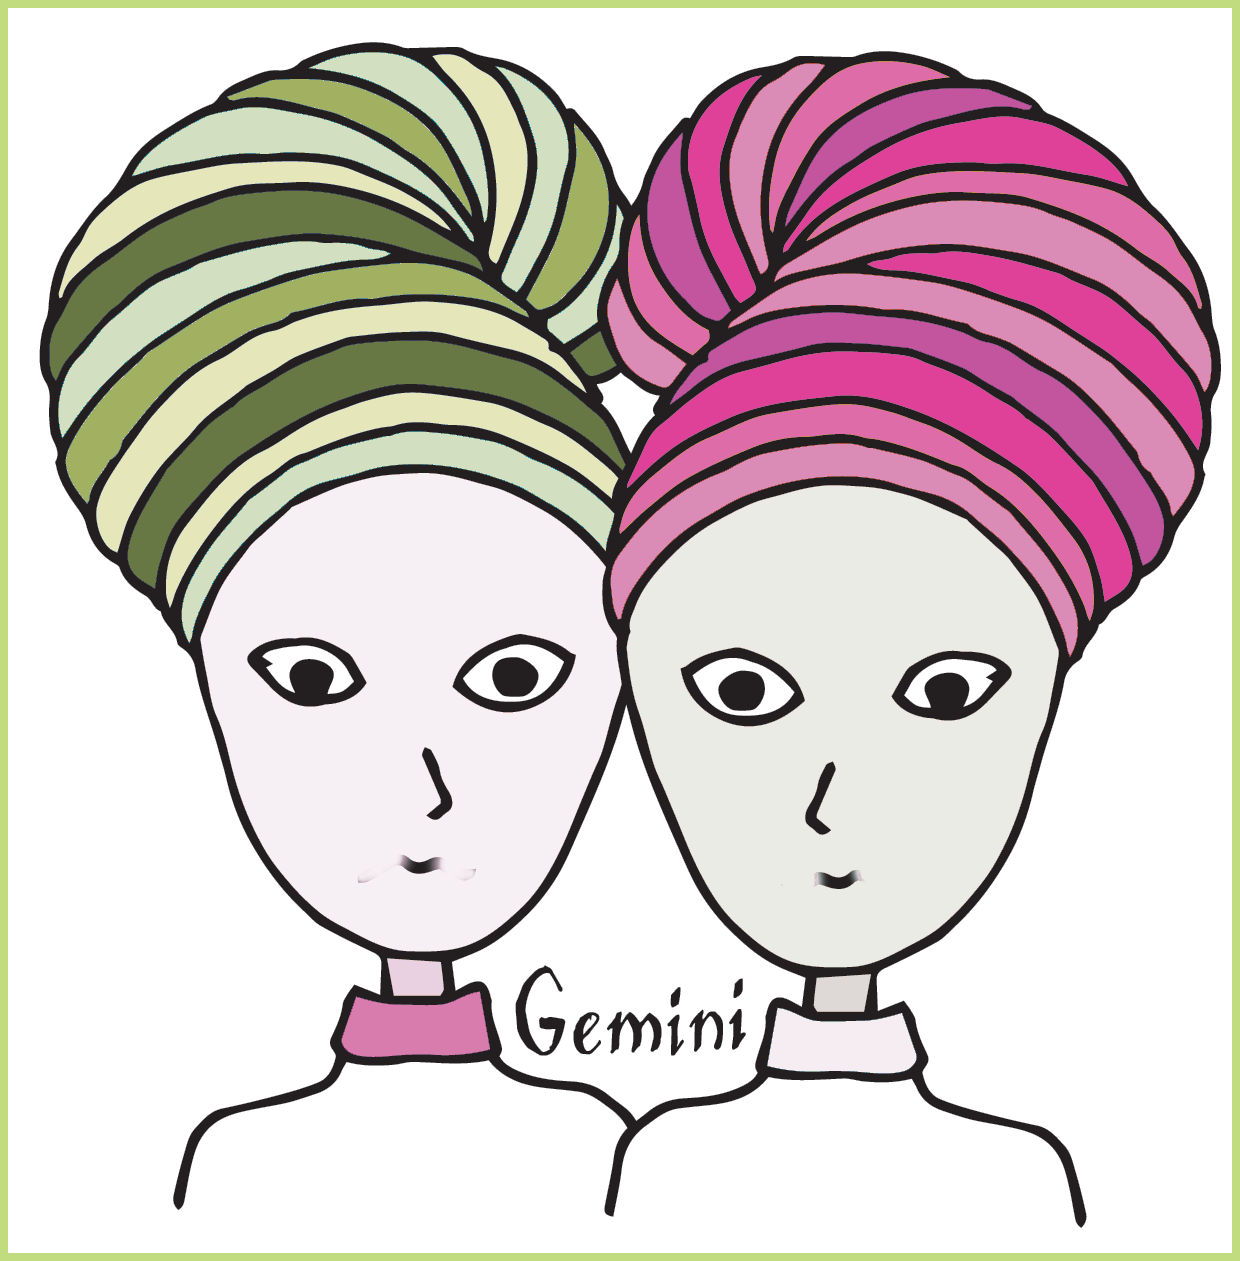 İkizleri temsil eden iki kadın, aynı ama farklı renklerde (pembe ve yeşil)